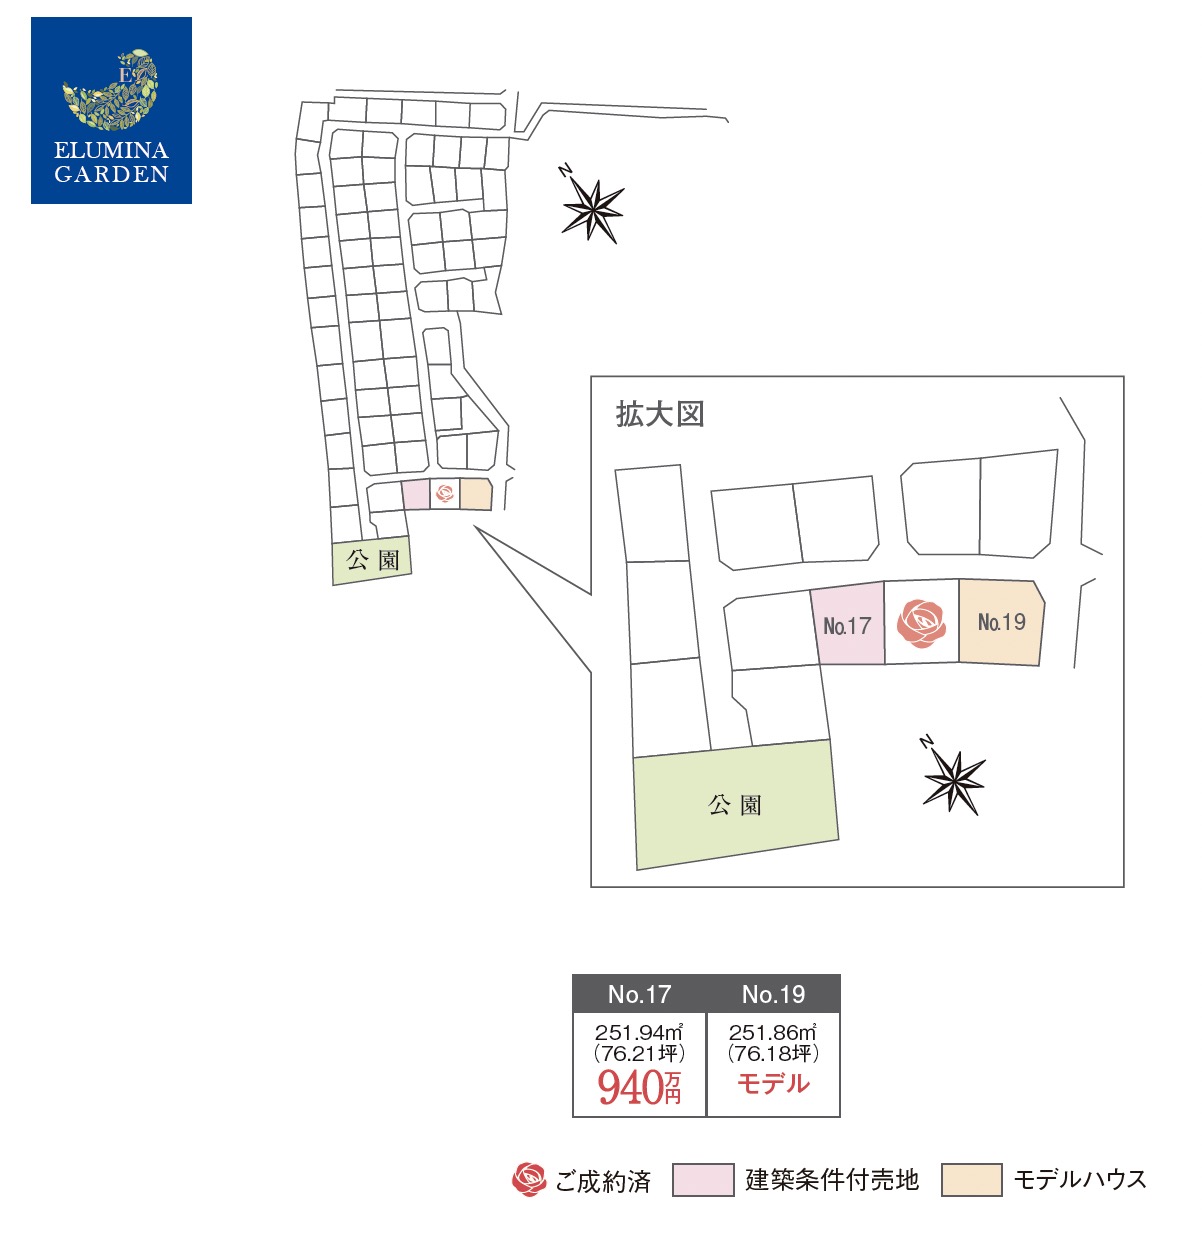 水戸市東野町第3期（全3区画）区画図・販売状況